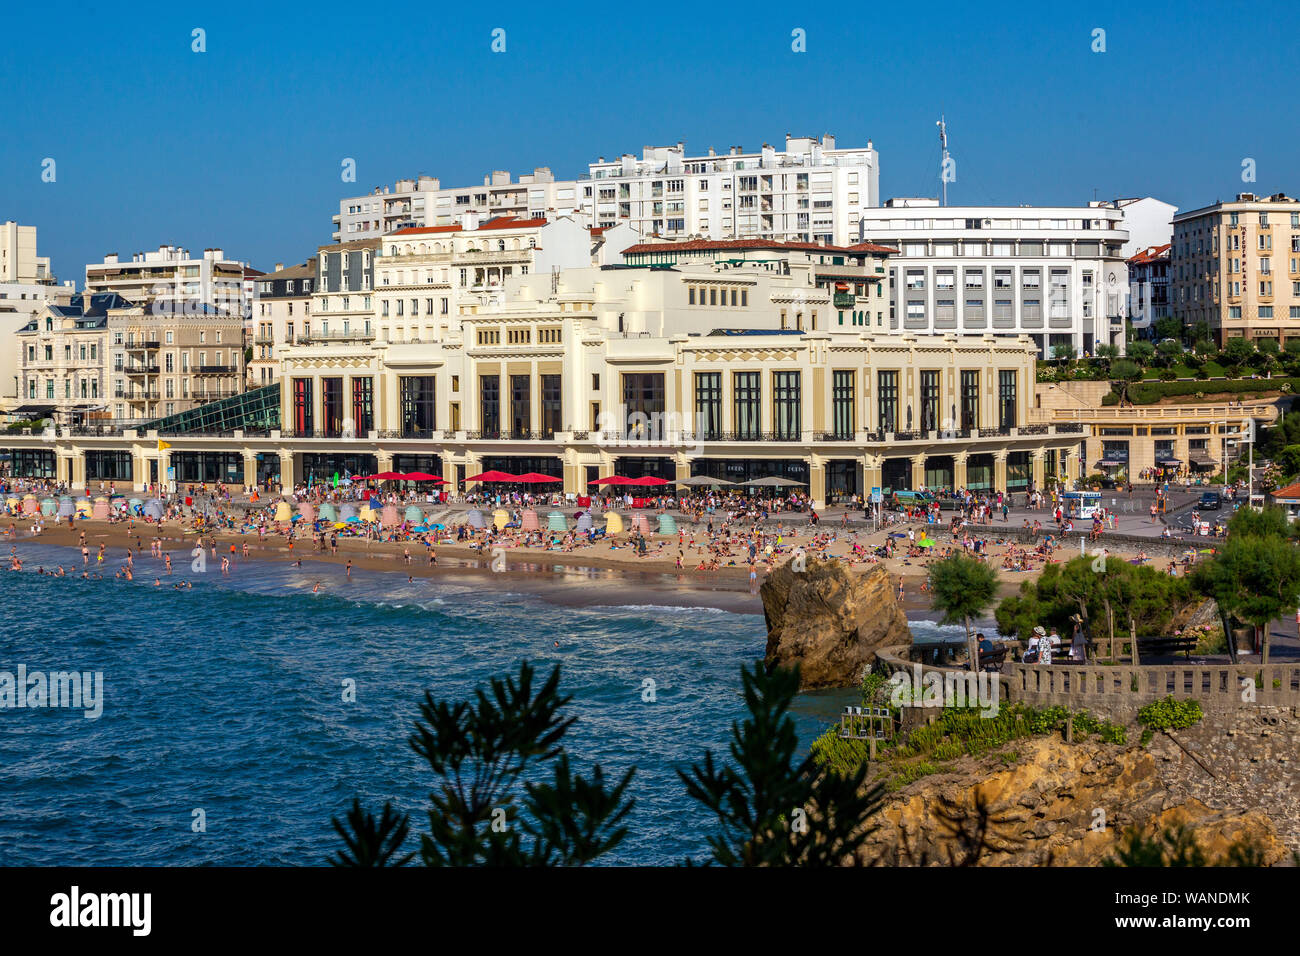 El Casino Municipal y la gran playa de Biarritz (Pirineos Atlánticos - Francia). Este espacio saluda a la Cumbre del G7 de 2019 del 24 al 26 de agosto. Foto de stock